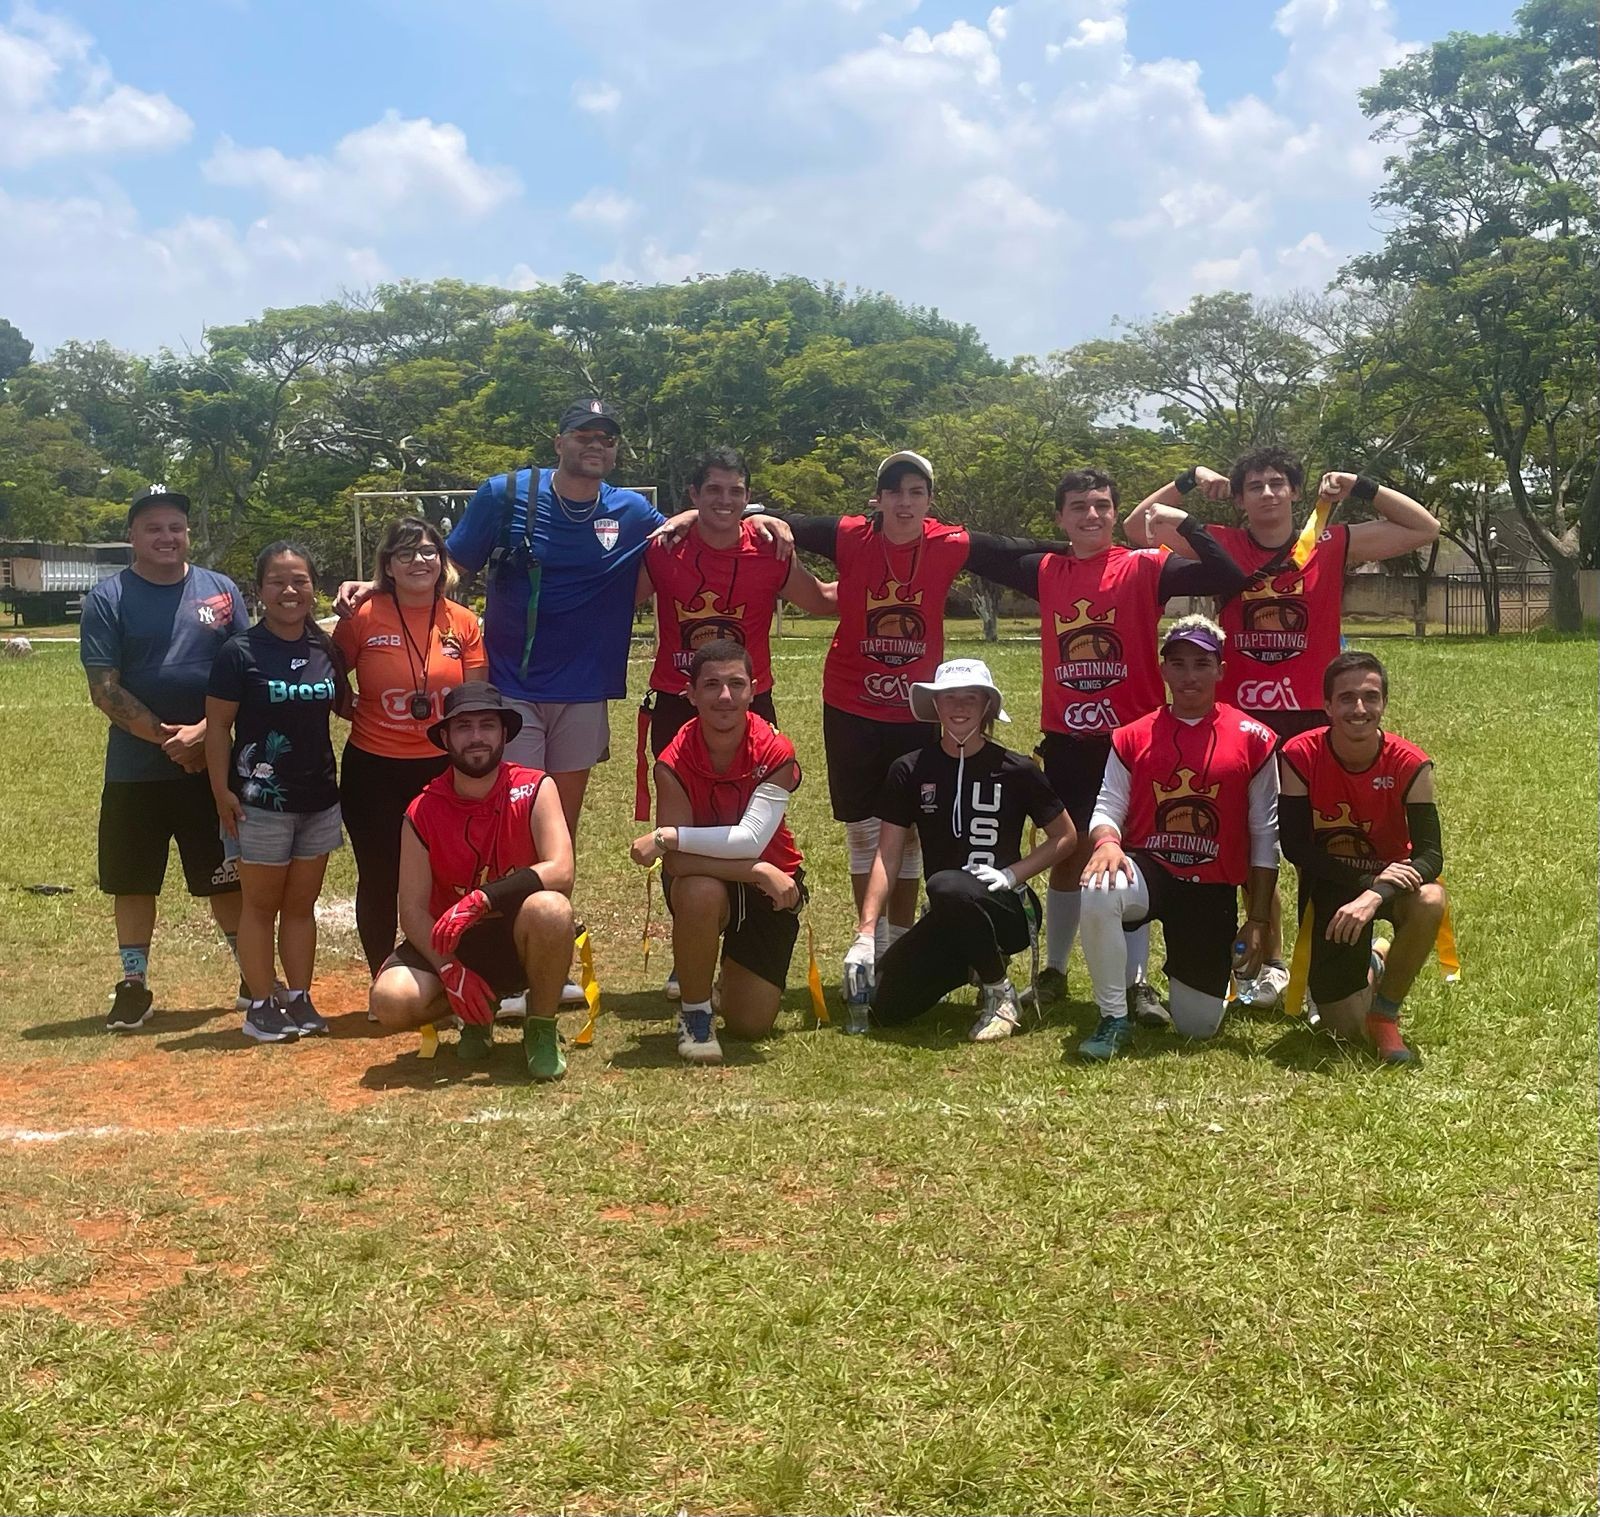 Experiência além do esporte: time de projeto social recebe jogadores da maior liga de futebol americano do mundo